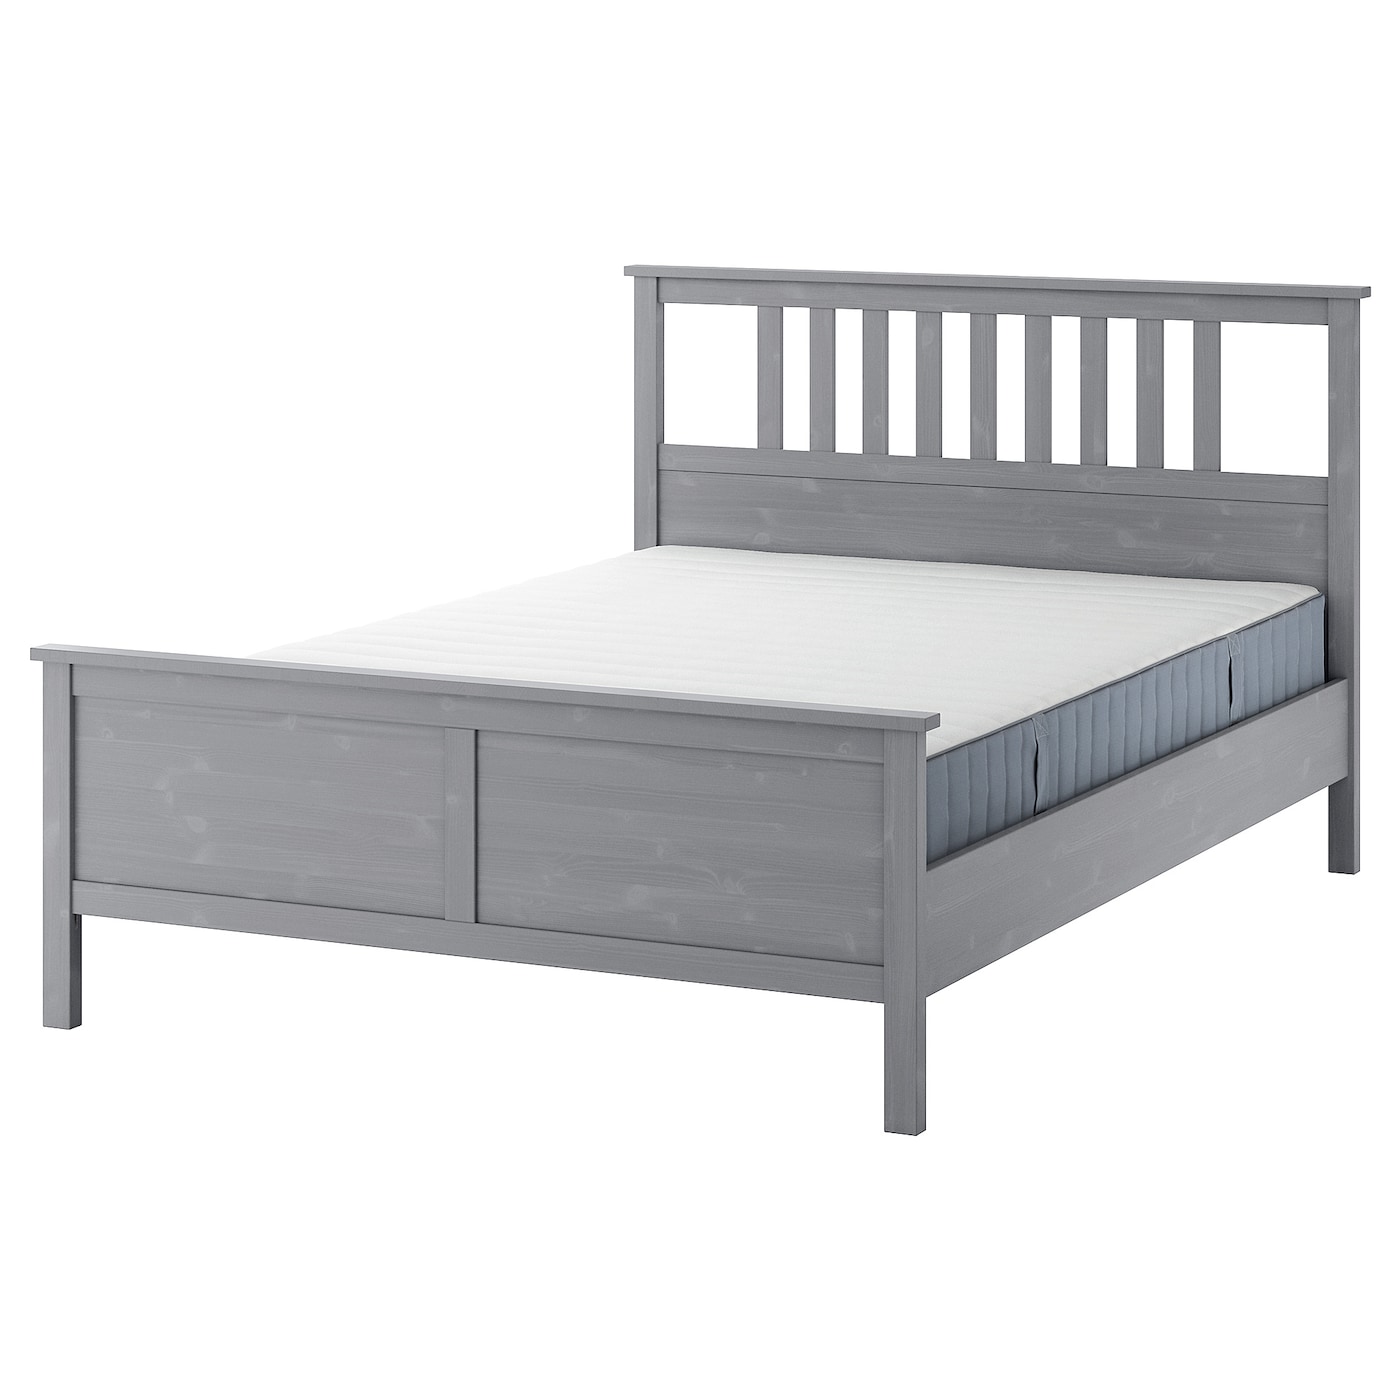 Кровать - IKEA HEMNES, 200х140 см, жесткий матрас, серый, ХЕМНЕС ИКЕА